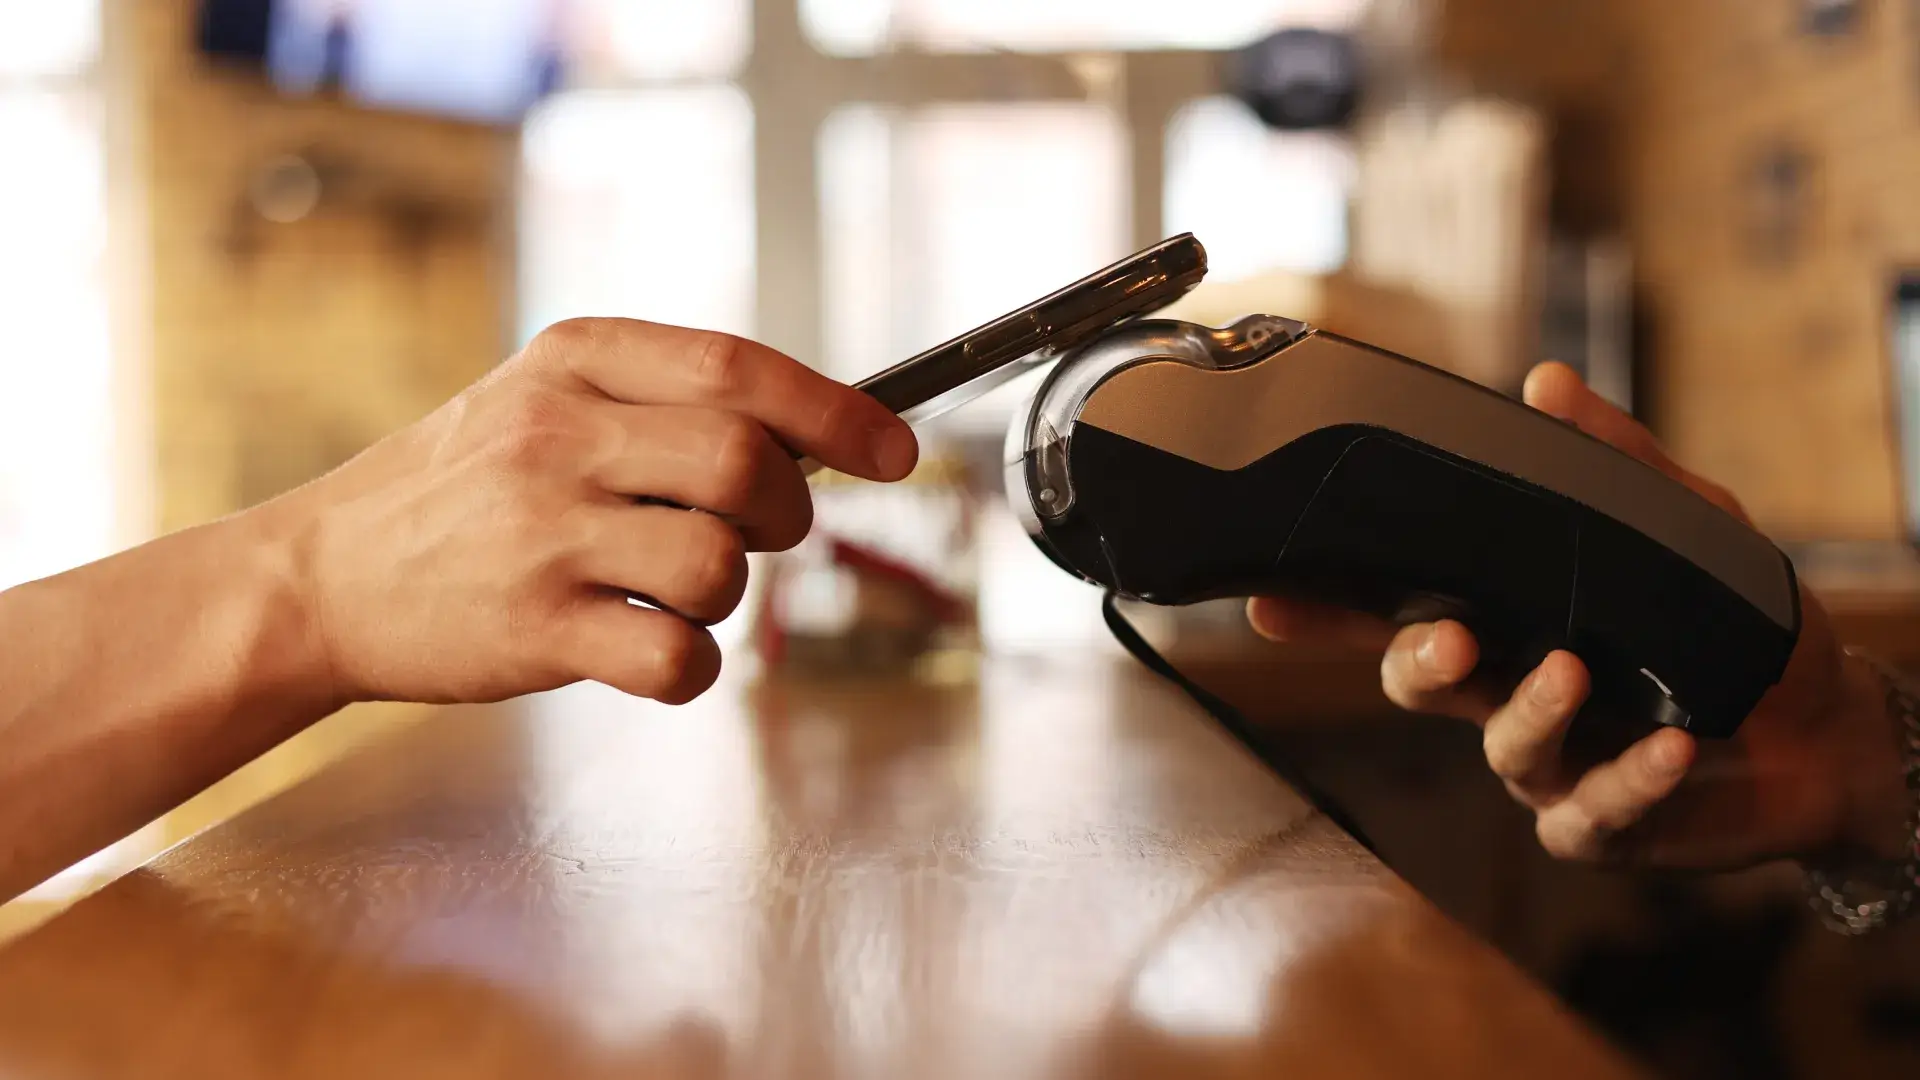 Ein Kunde legt ein Smartphone auf ein mobiles Zahlungsgerät, um kontaktlos zu bezahlen und einen digitalen Beleg automatisiert zu erhalten